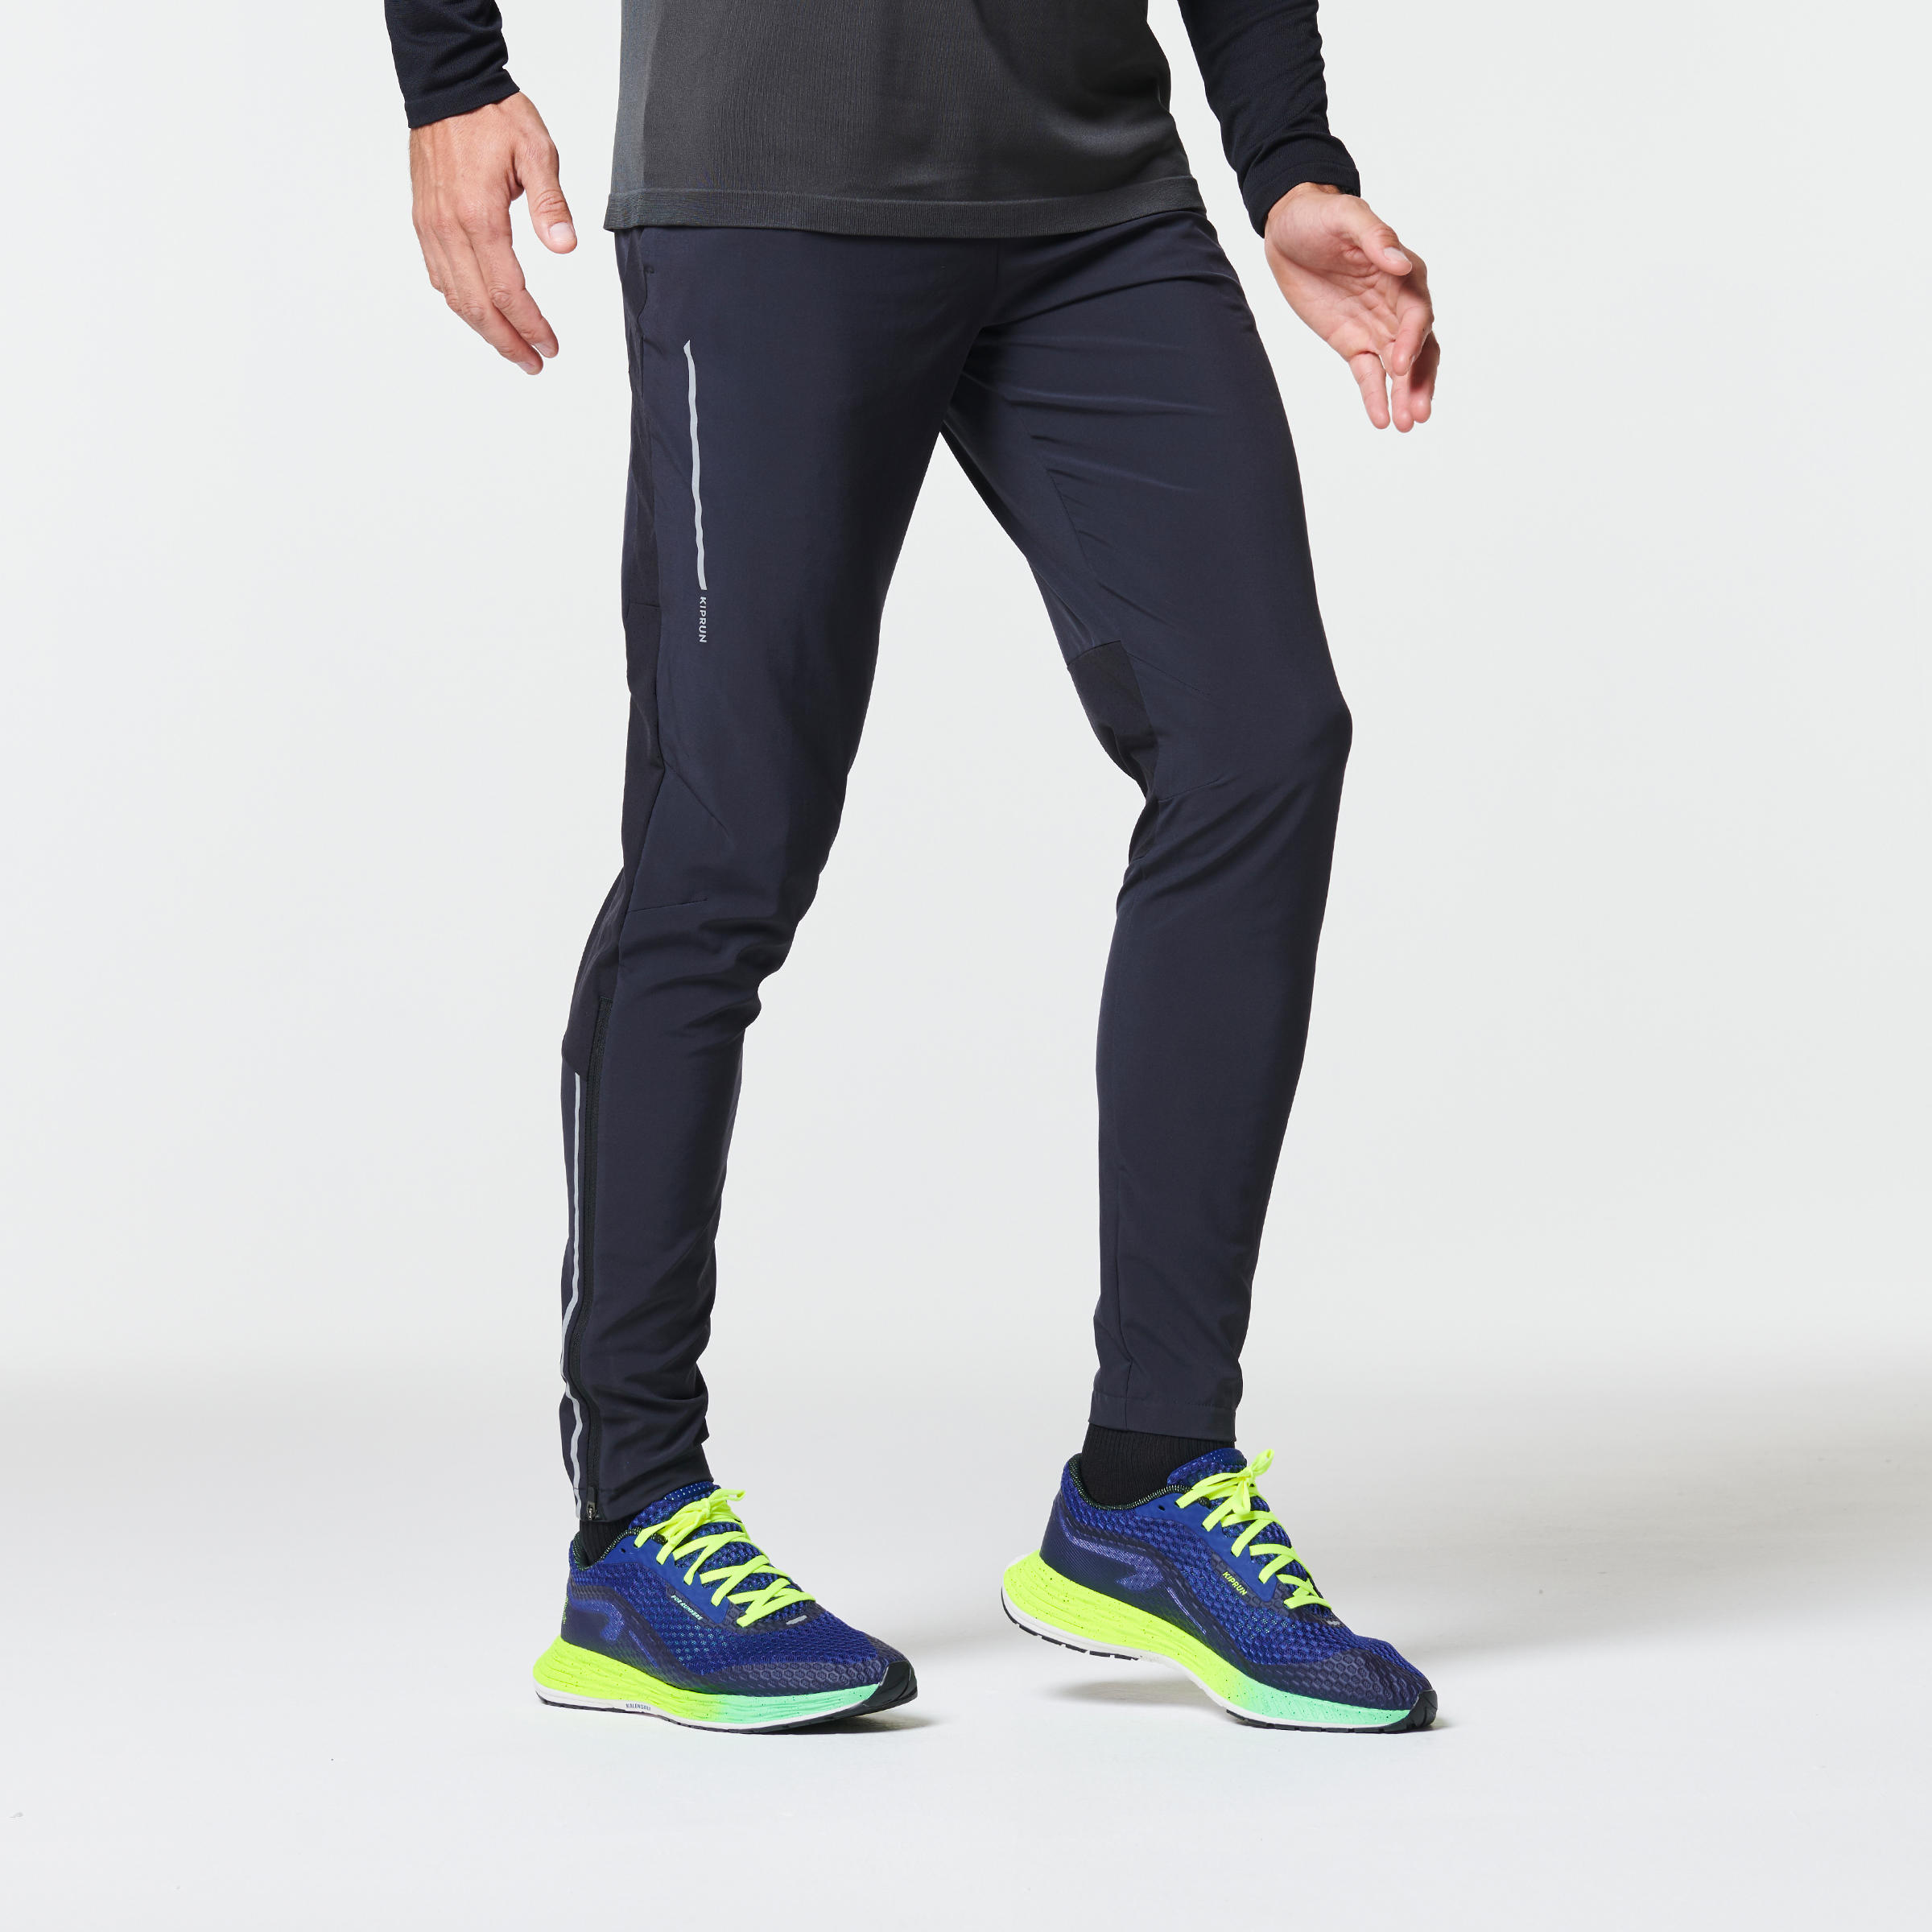 Men's Running Tights, Leggings & Waterproof Trousers | inov-8 UK